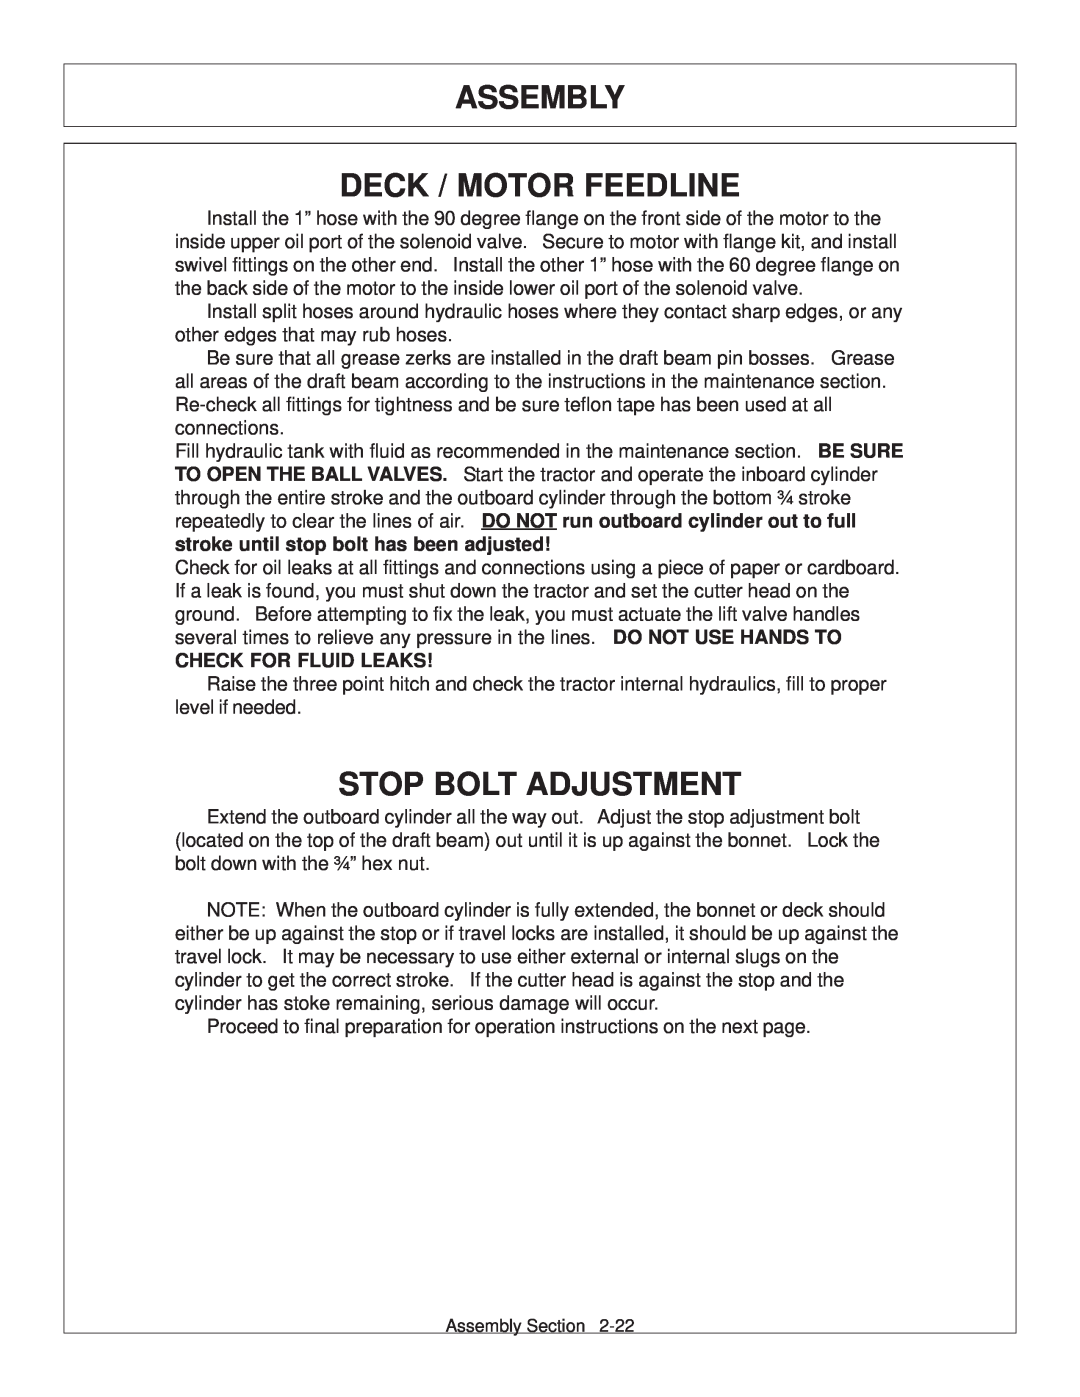 Tiger Products Co., Ltd JD 72-7520 manual Assembly Deck / Motor Feedline, Stop Bolt Adjustment, Check For Fluid Leaks 